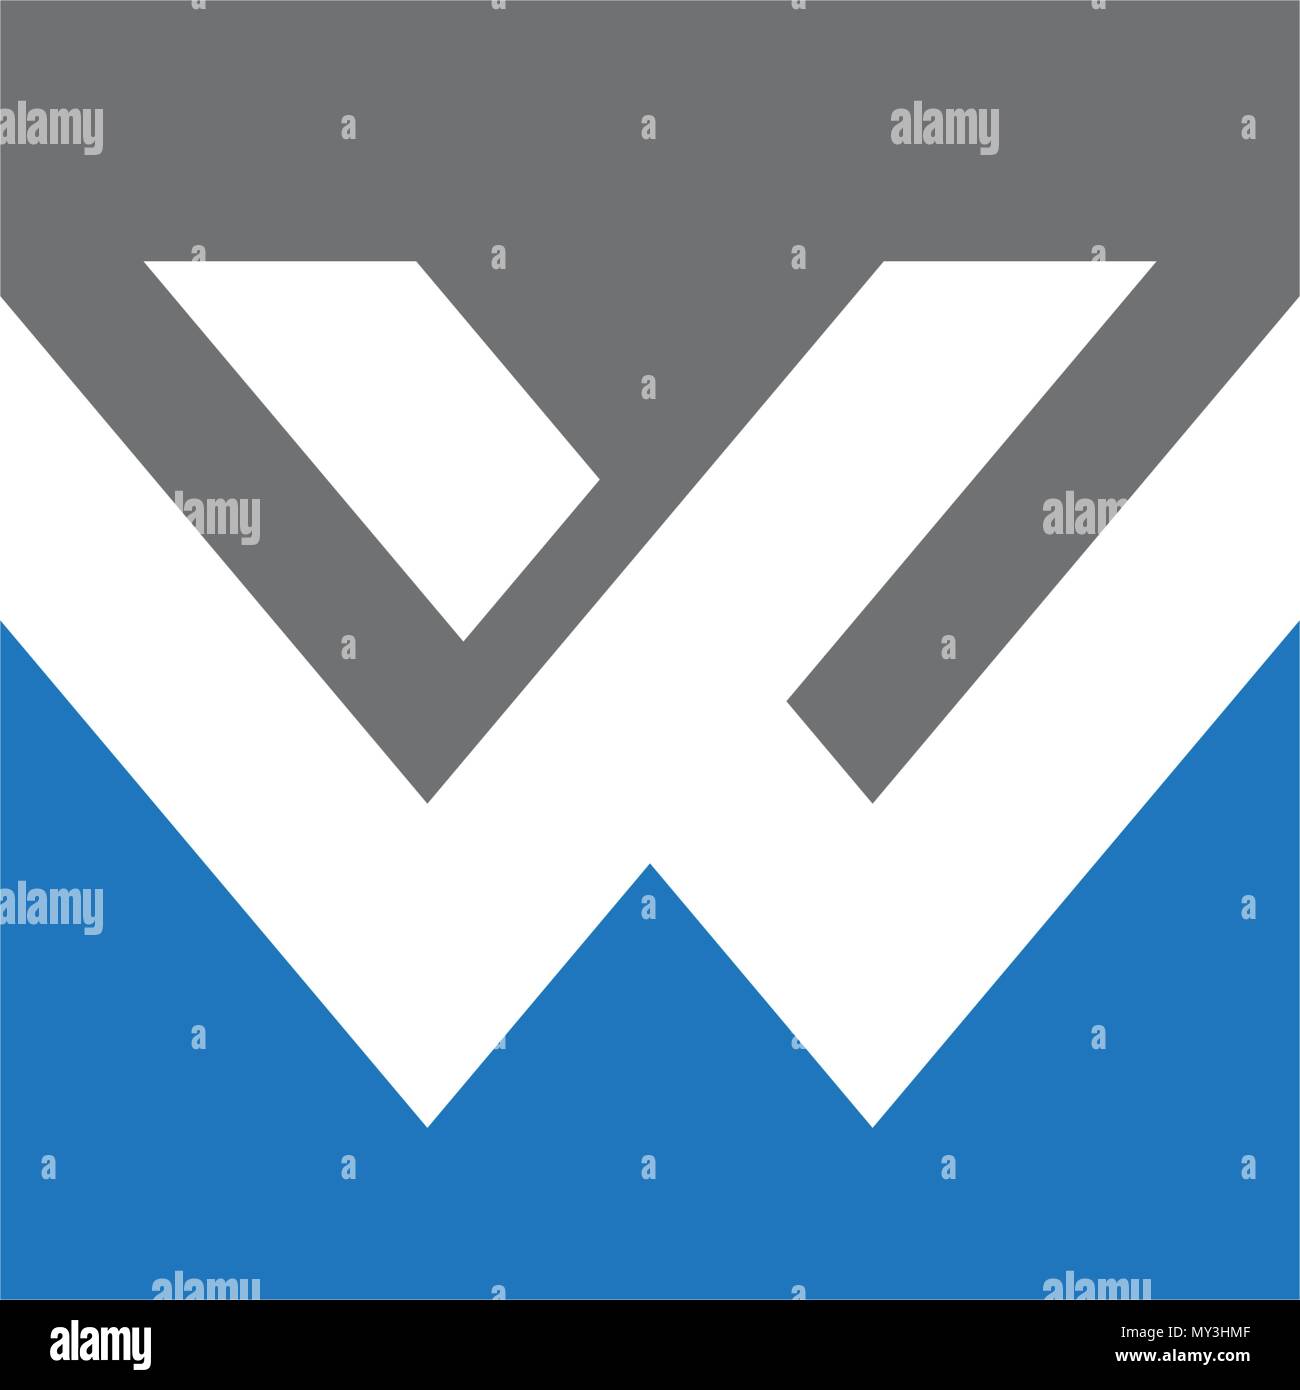 W Lettera business corporate unità astratta logo vettoriale Illustrazione Vettoriale